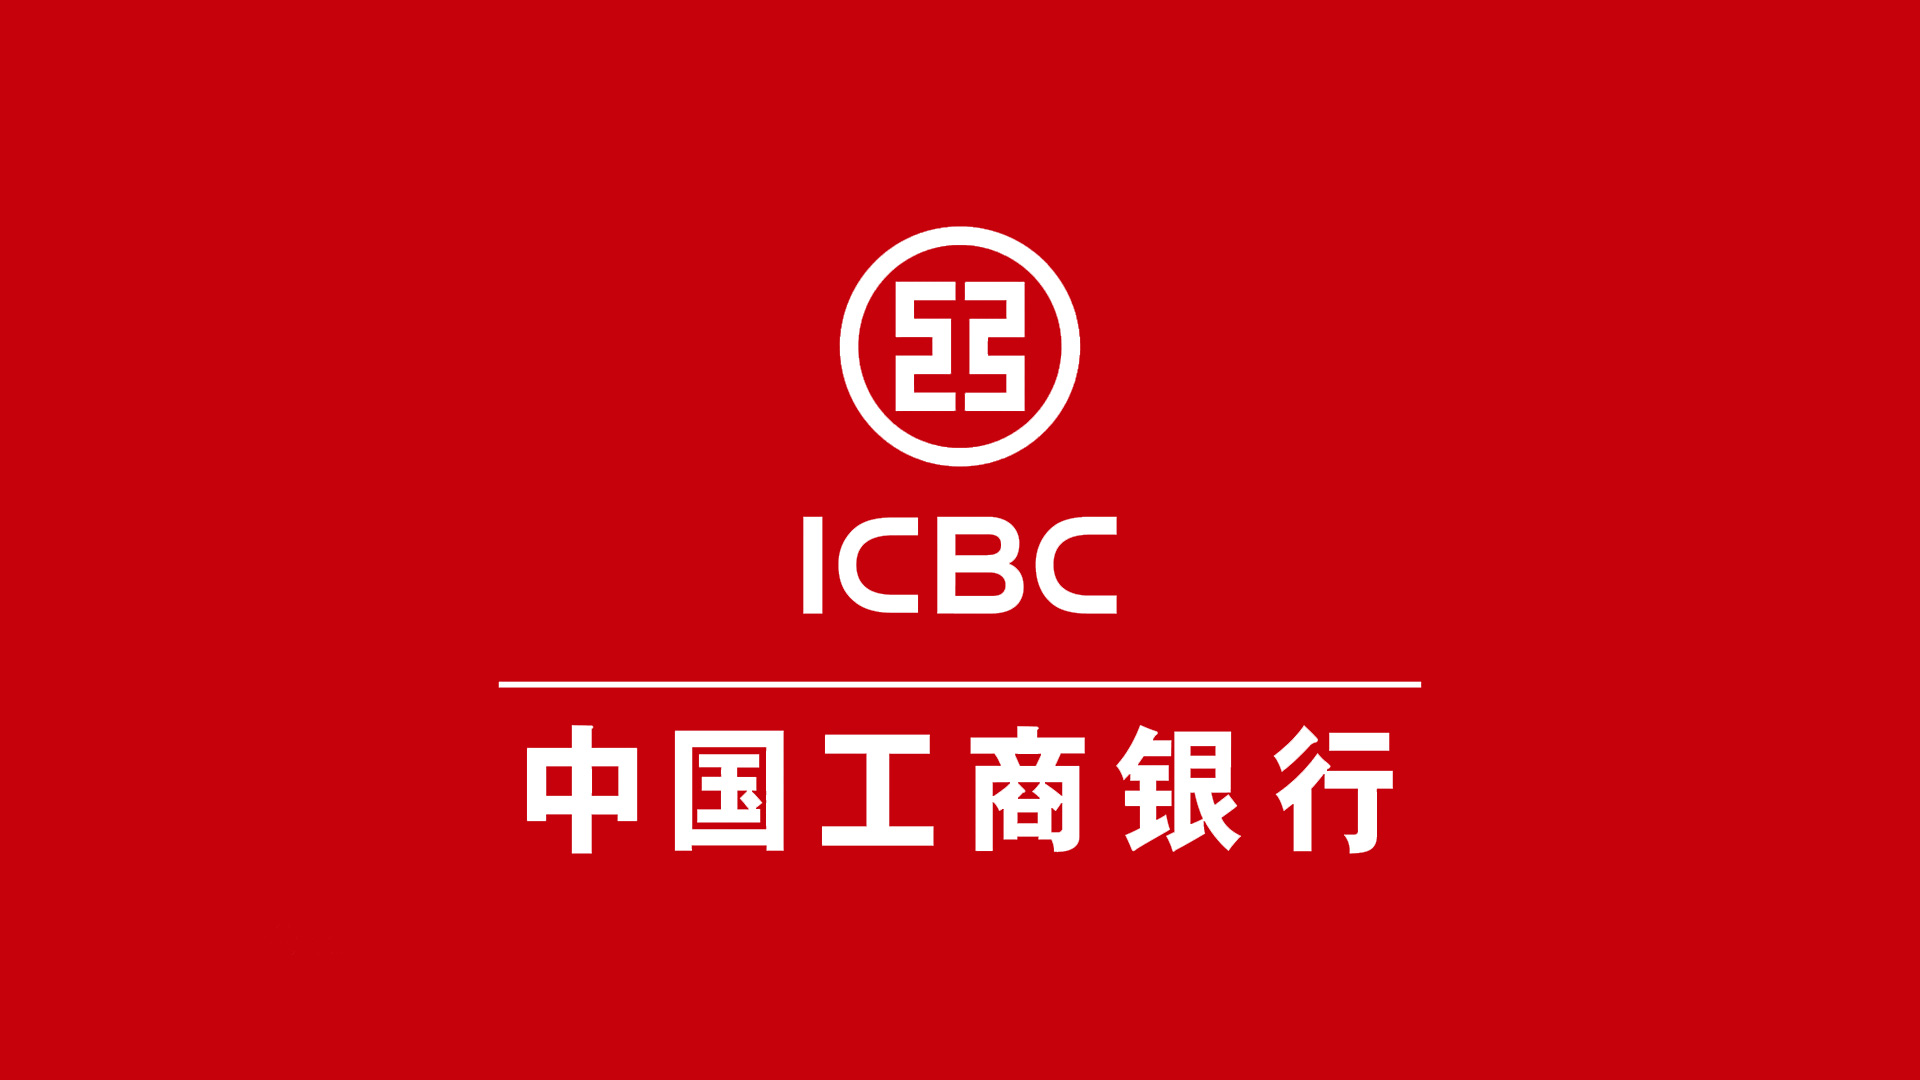 中国工商银行ICBC的标志设计反白稿.jpg